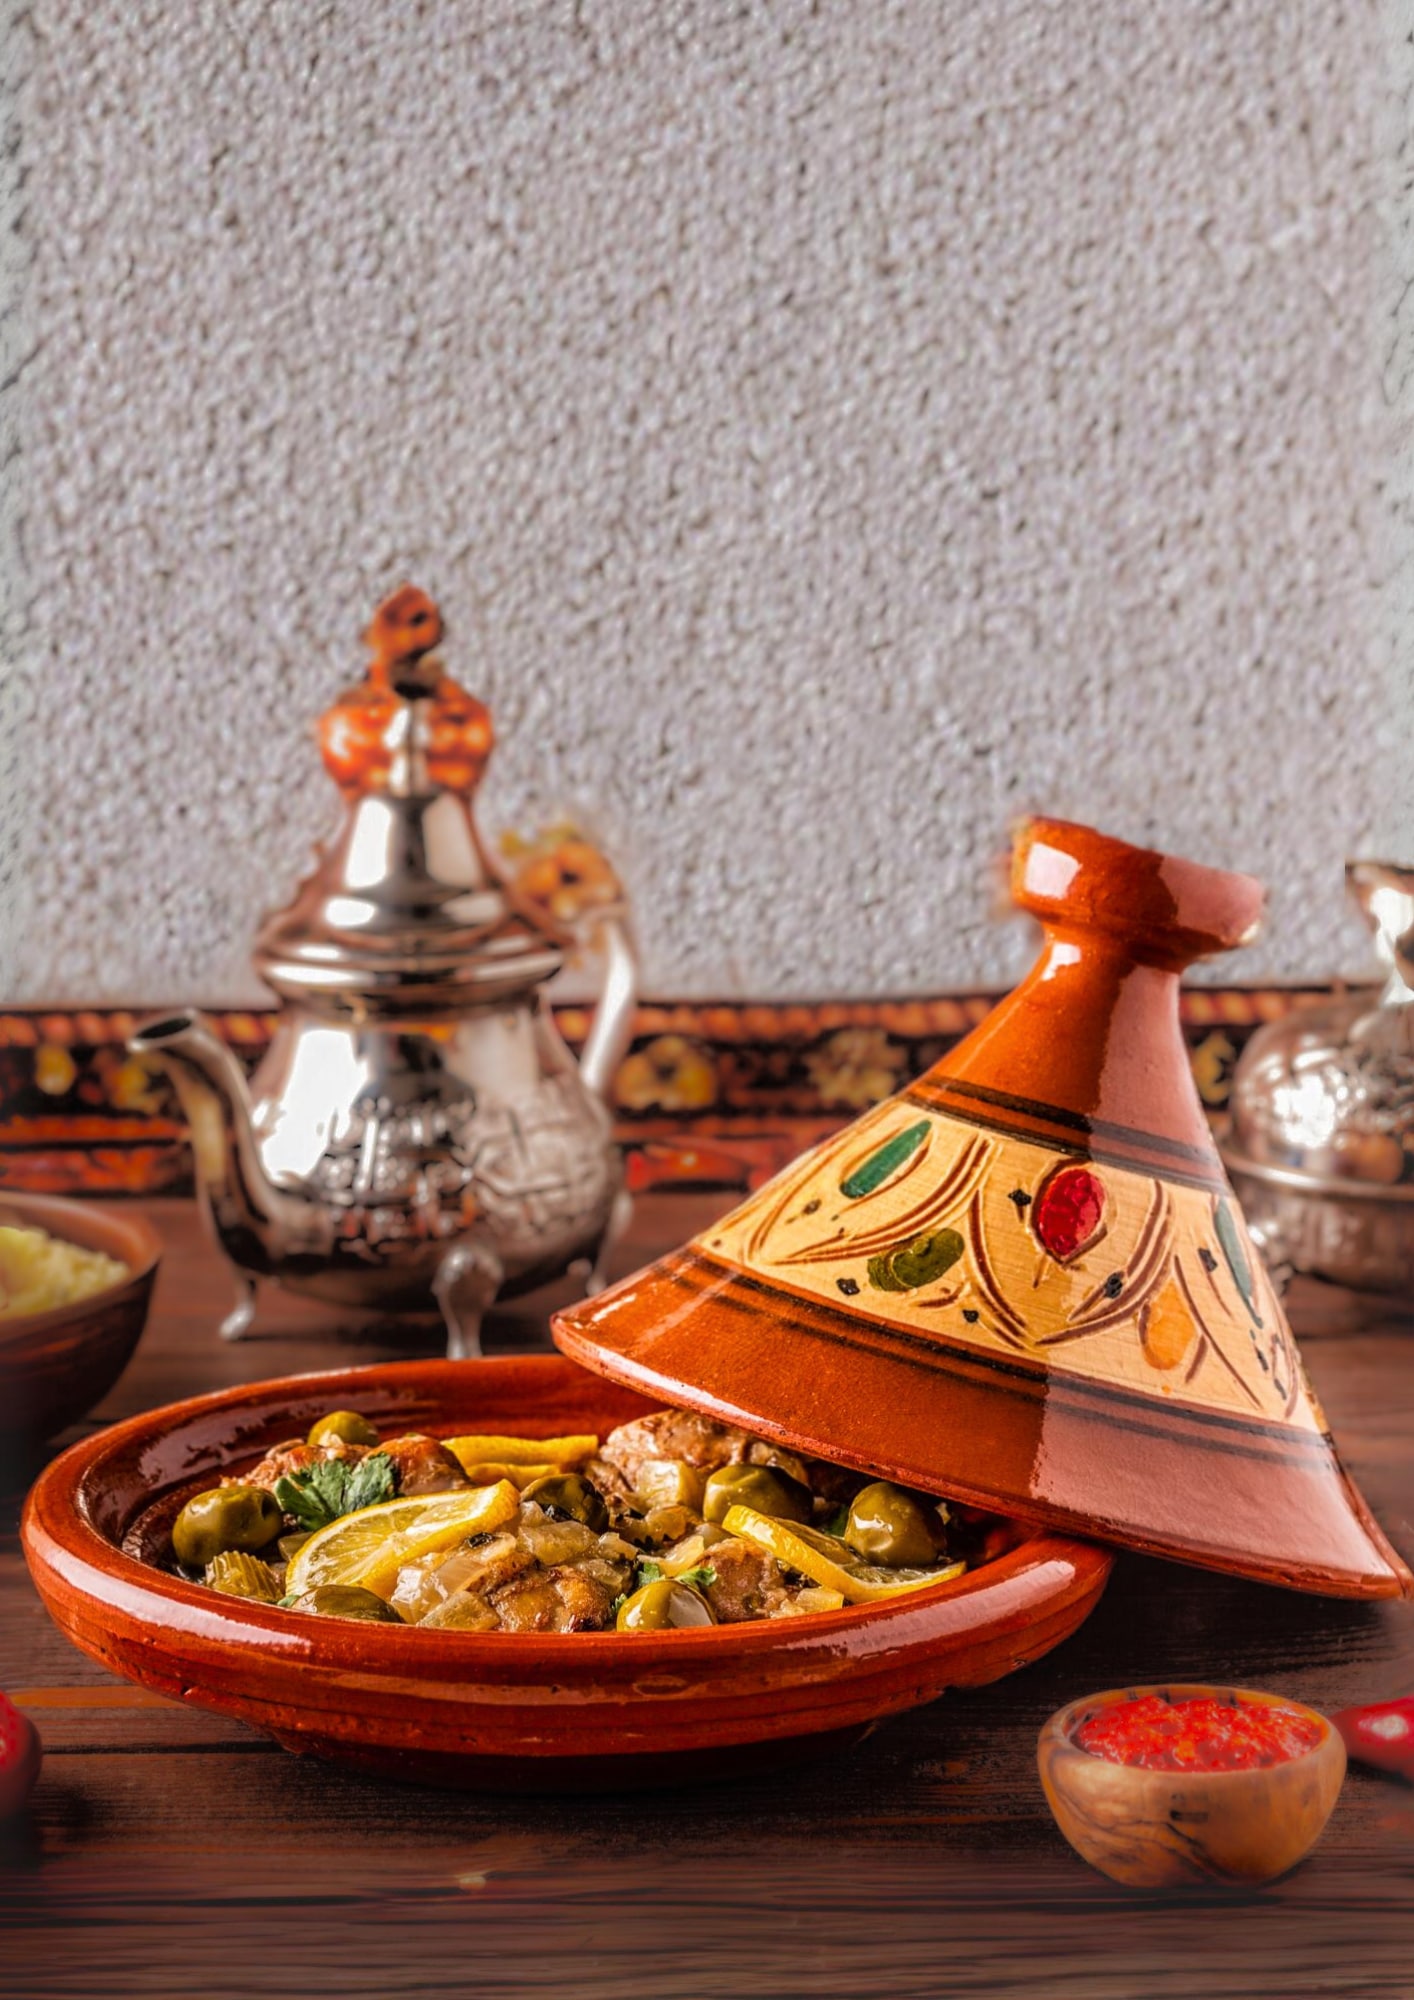 Recette de cuisine marocaine : tajine marocain au poulet, olives et citron confit